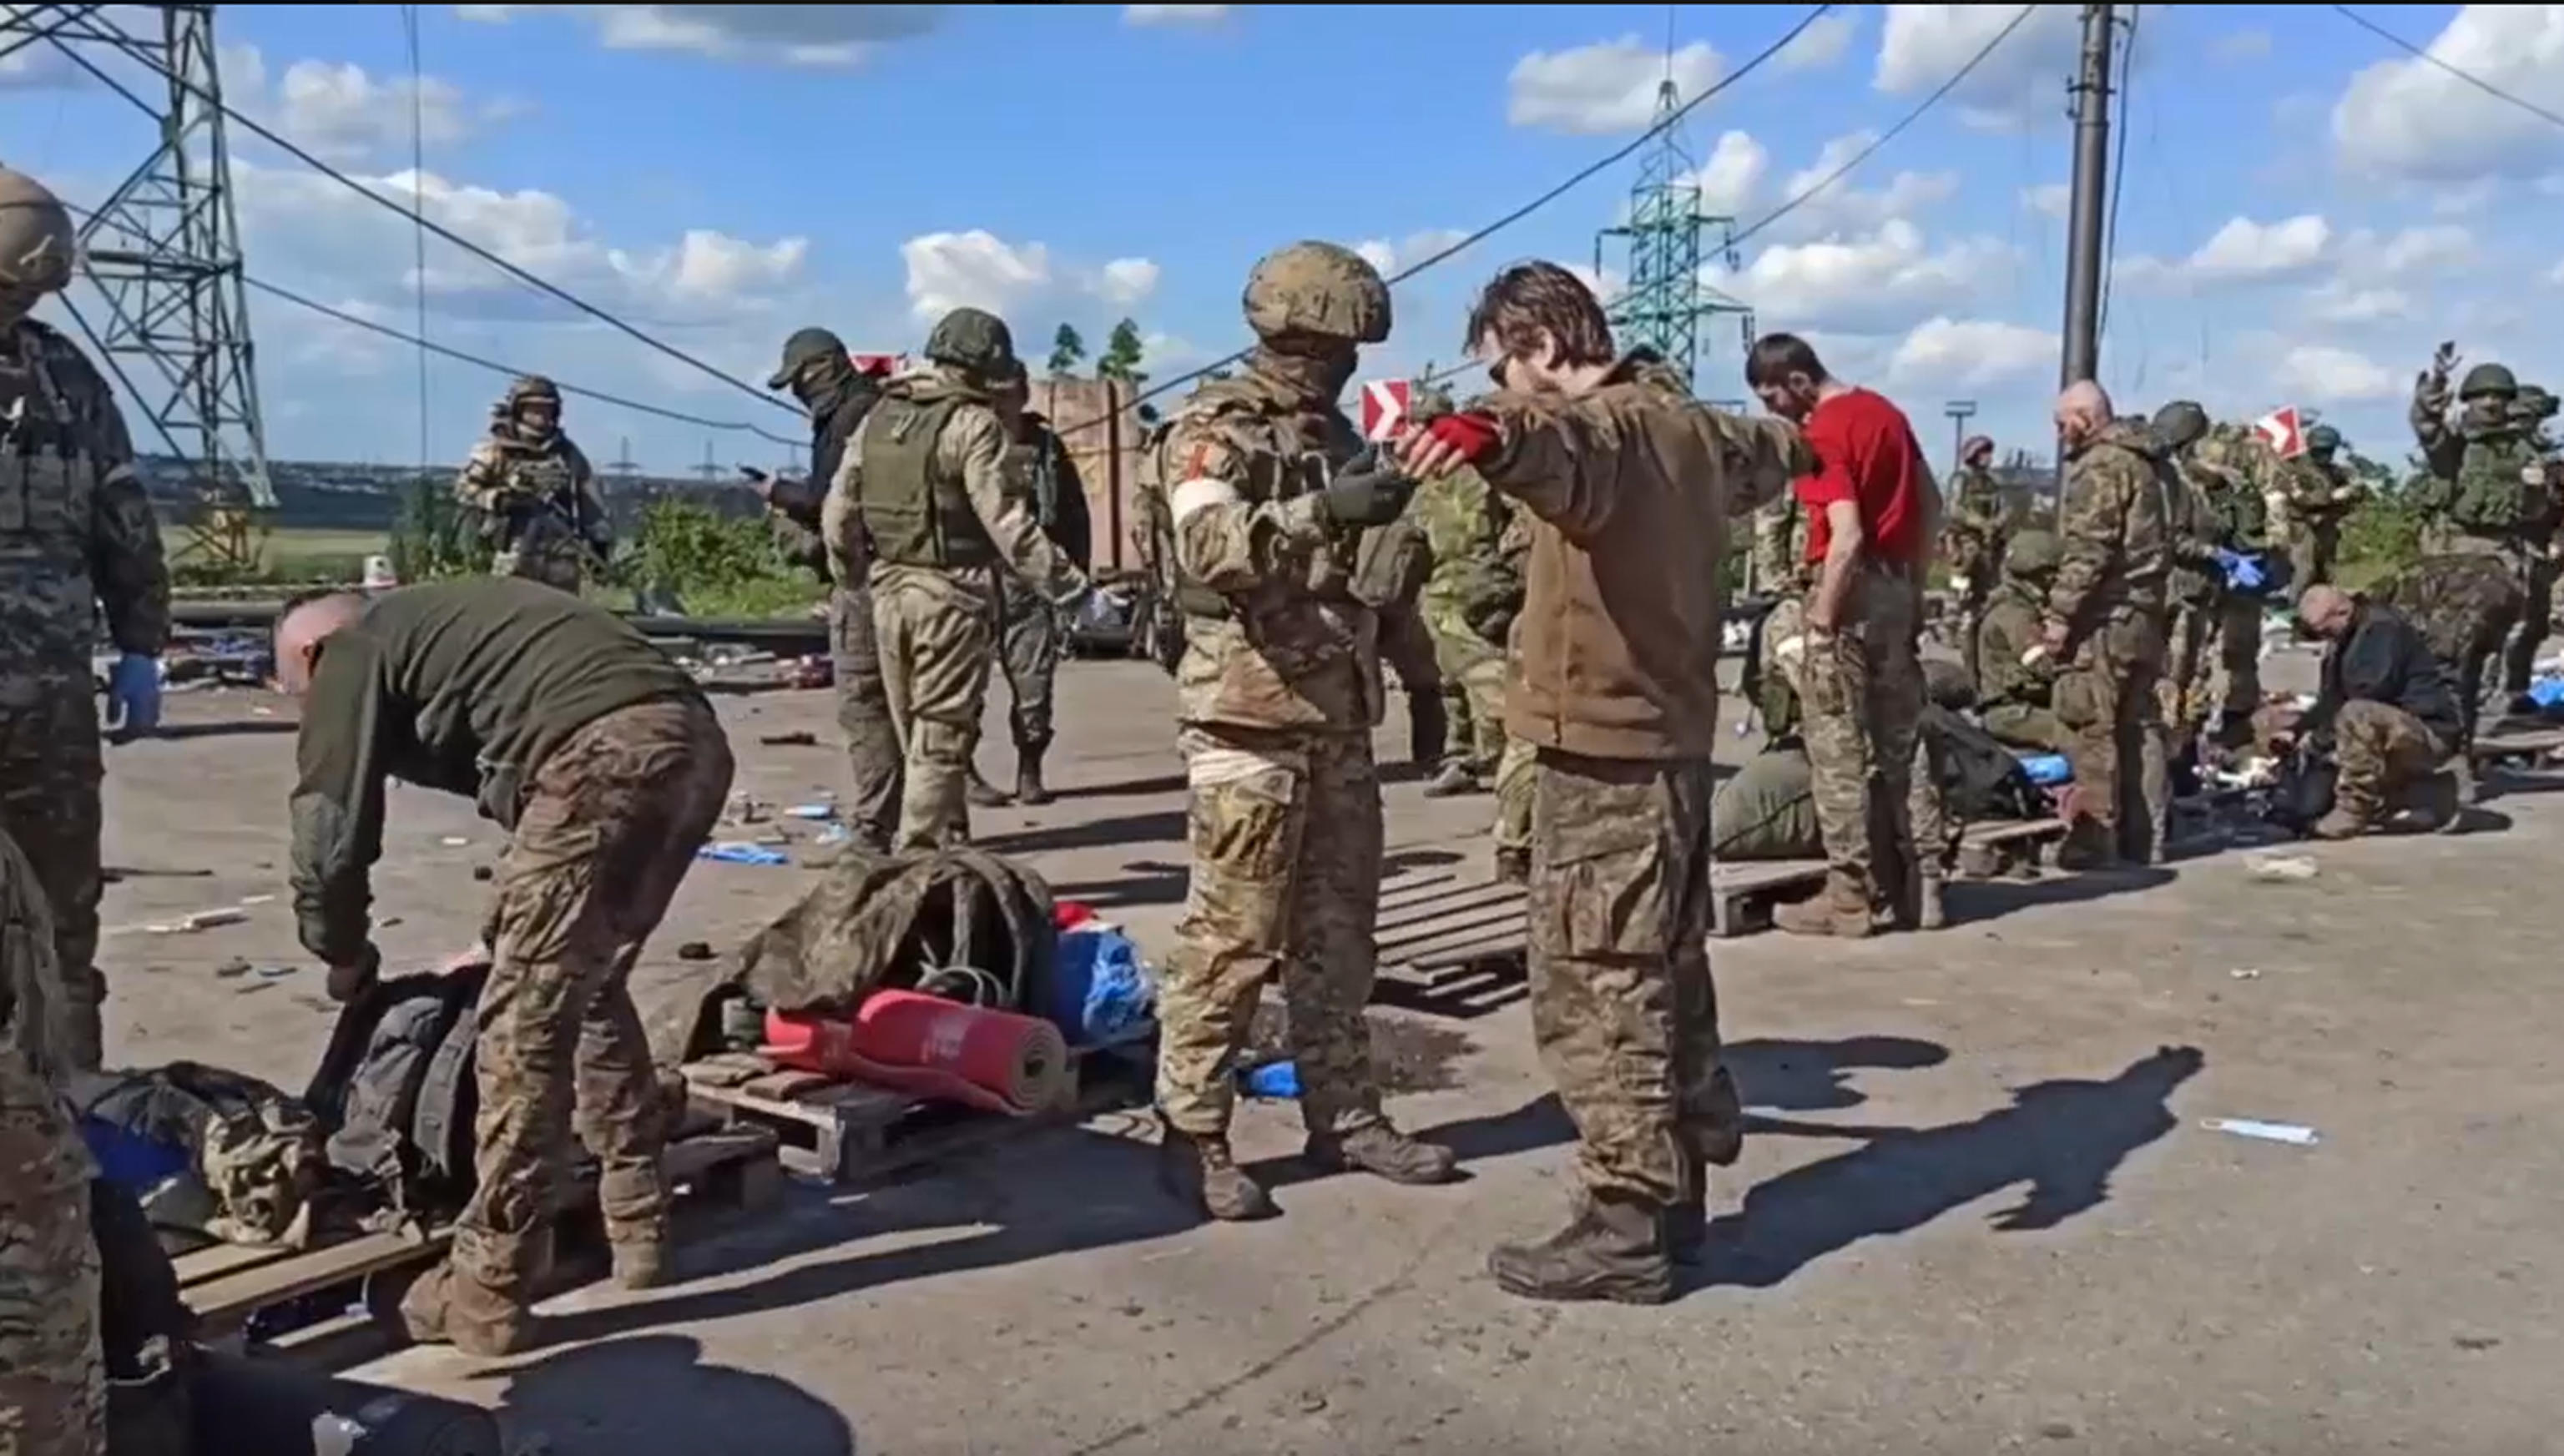 Media Usa: «Gli Stati Uniti valutano l’invio di soldati a Kiev per proteggere l’ambasciata» – Il live blog